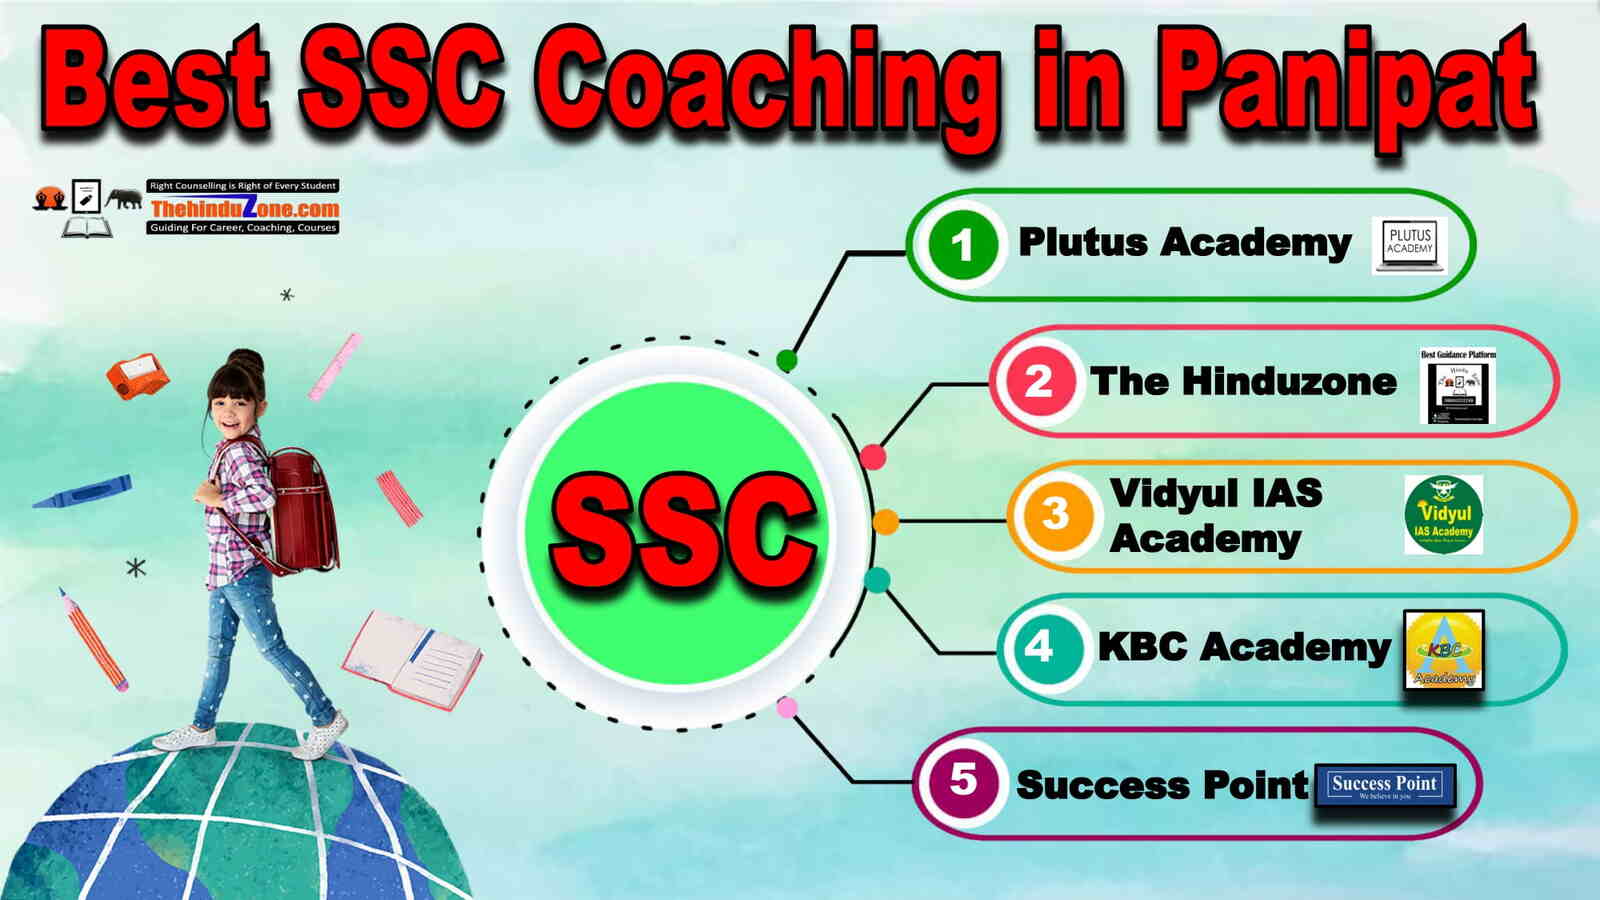 Best SSC Coaching in Panipat